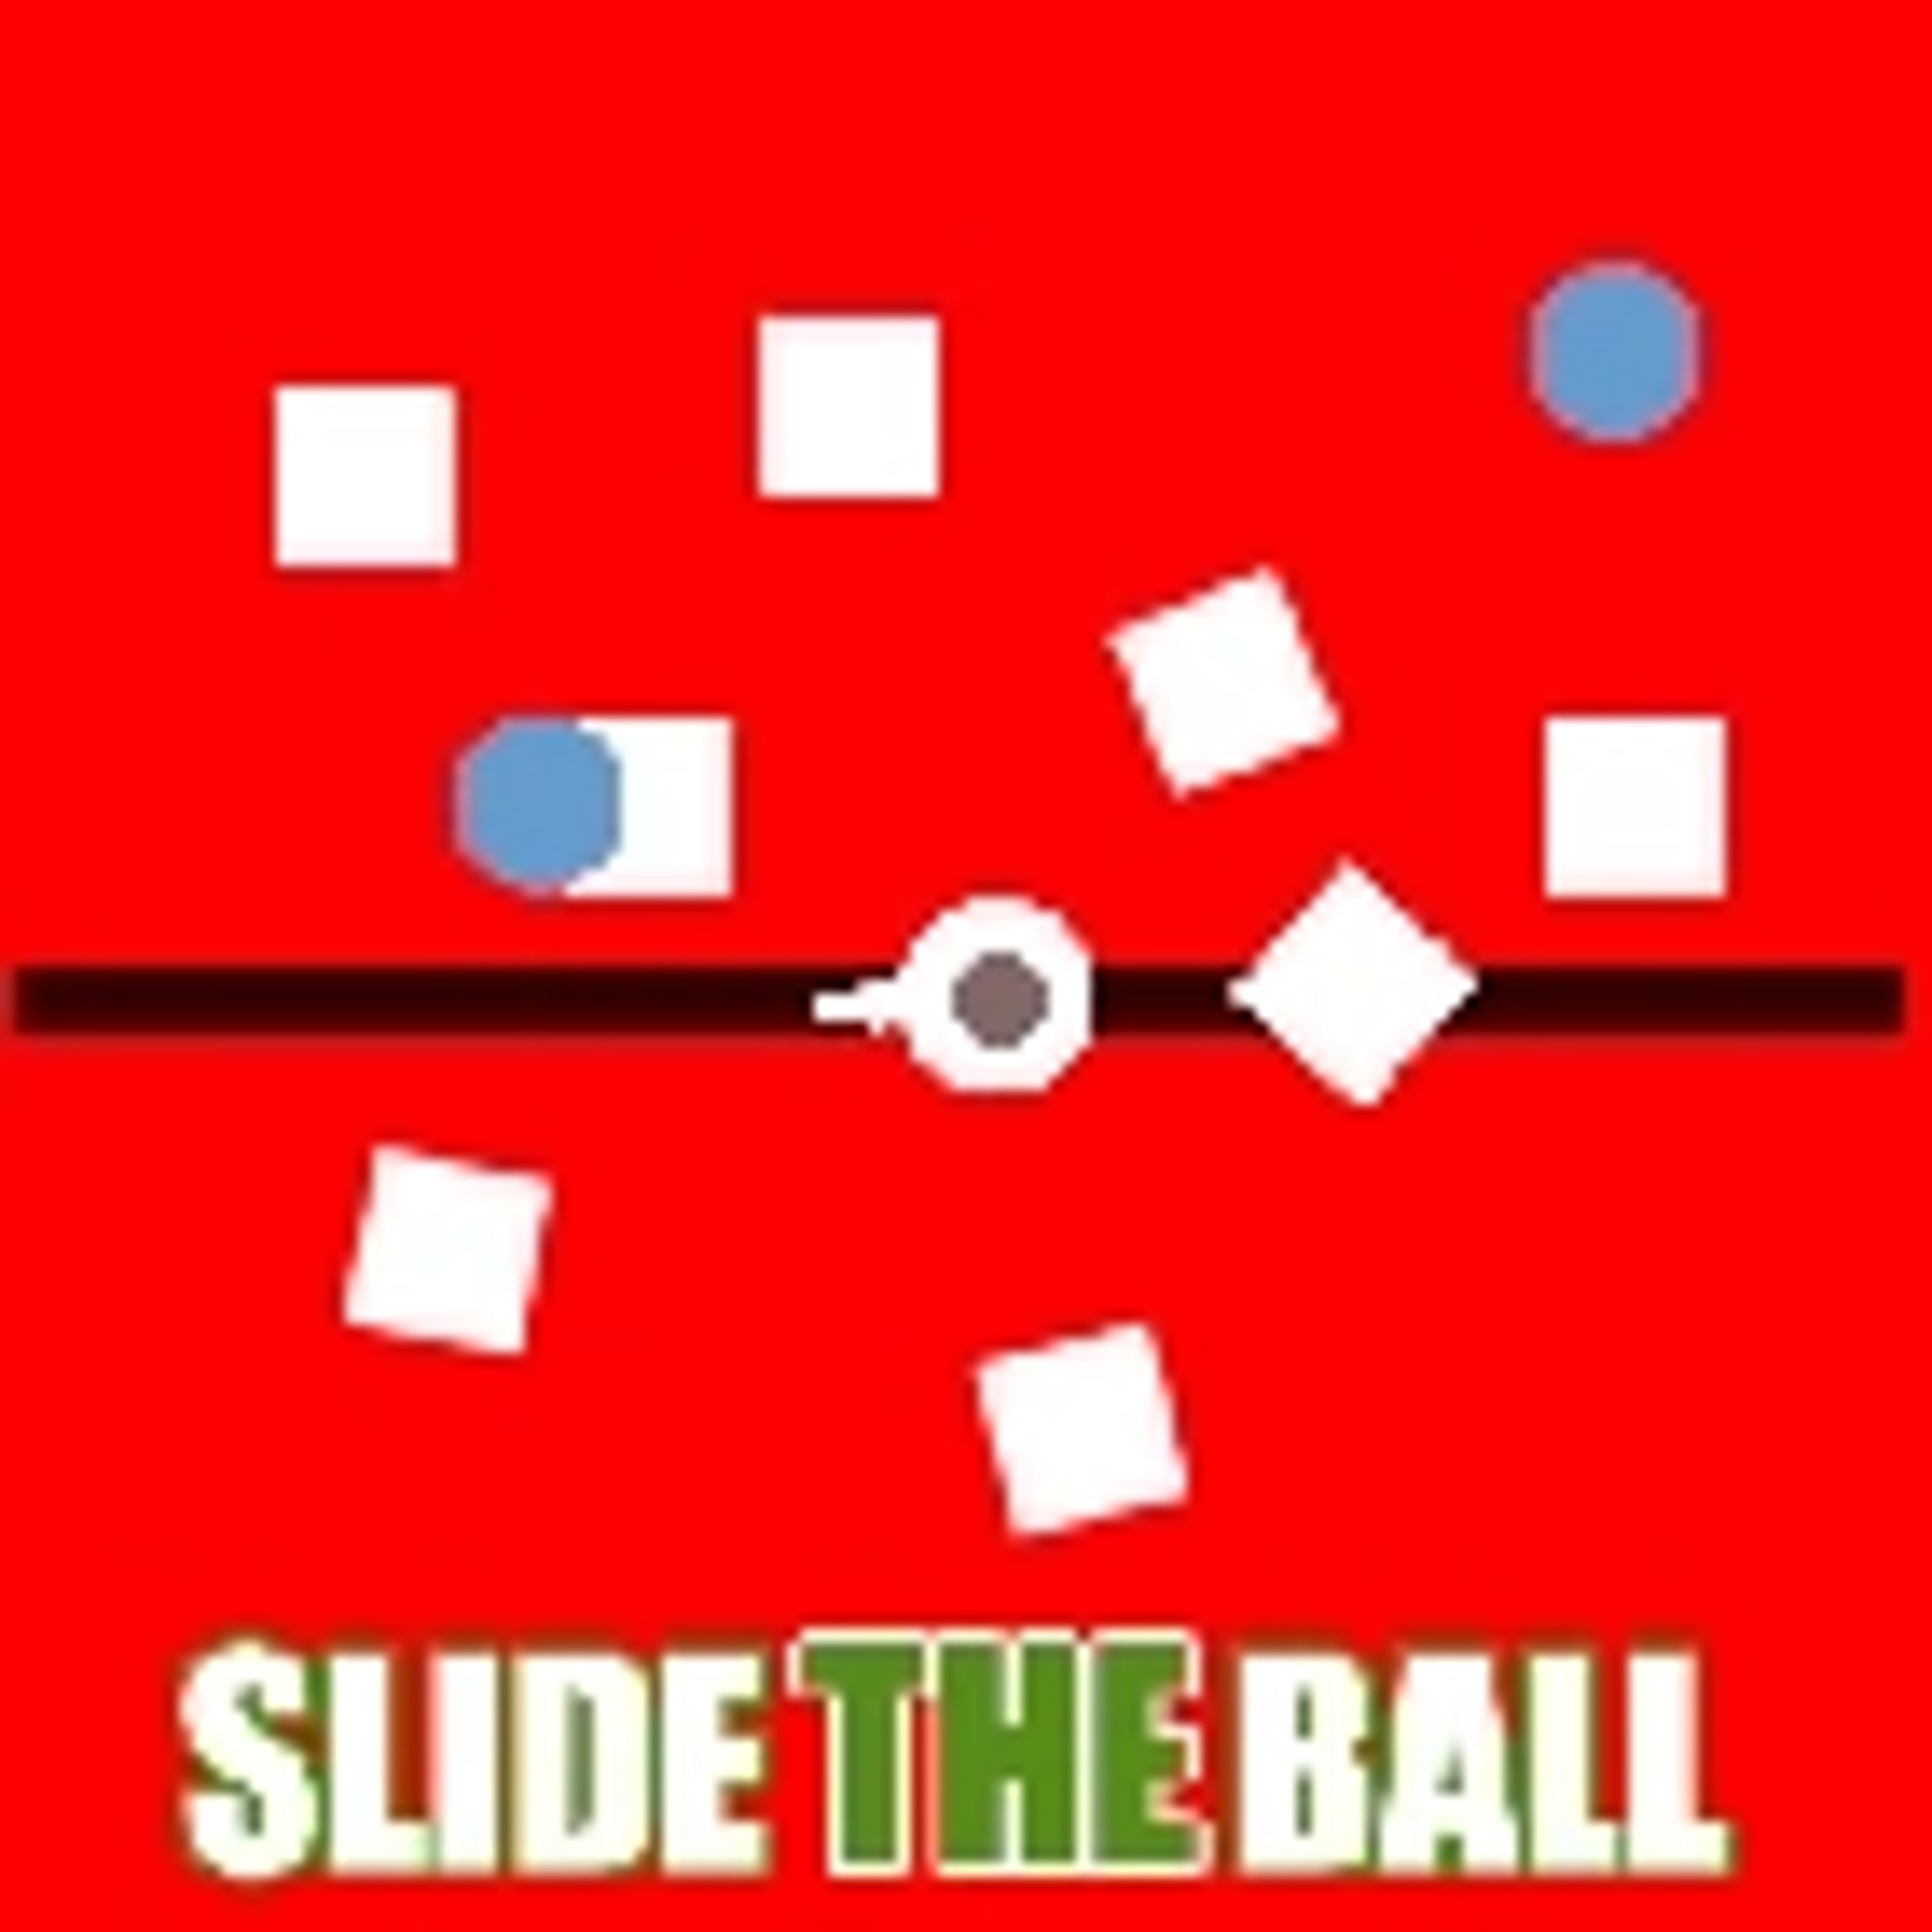 Slide The Ball